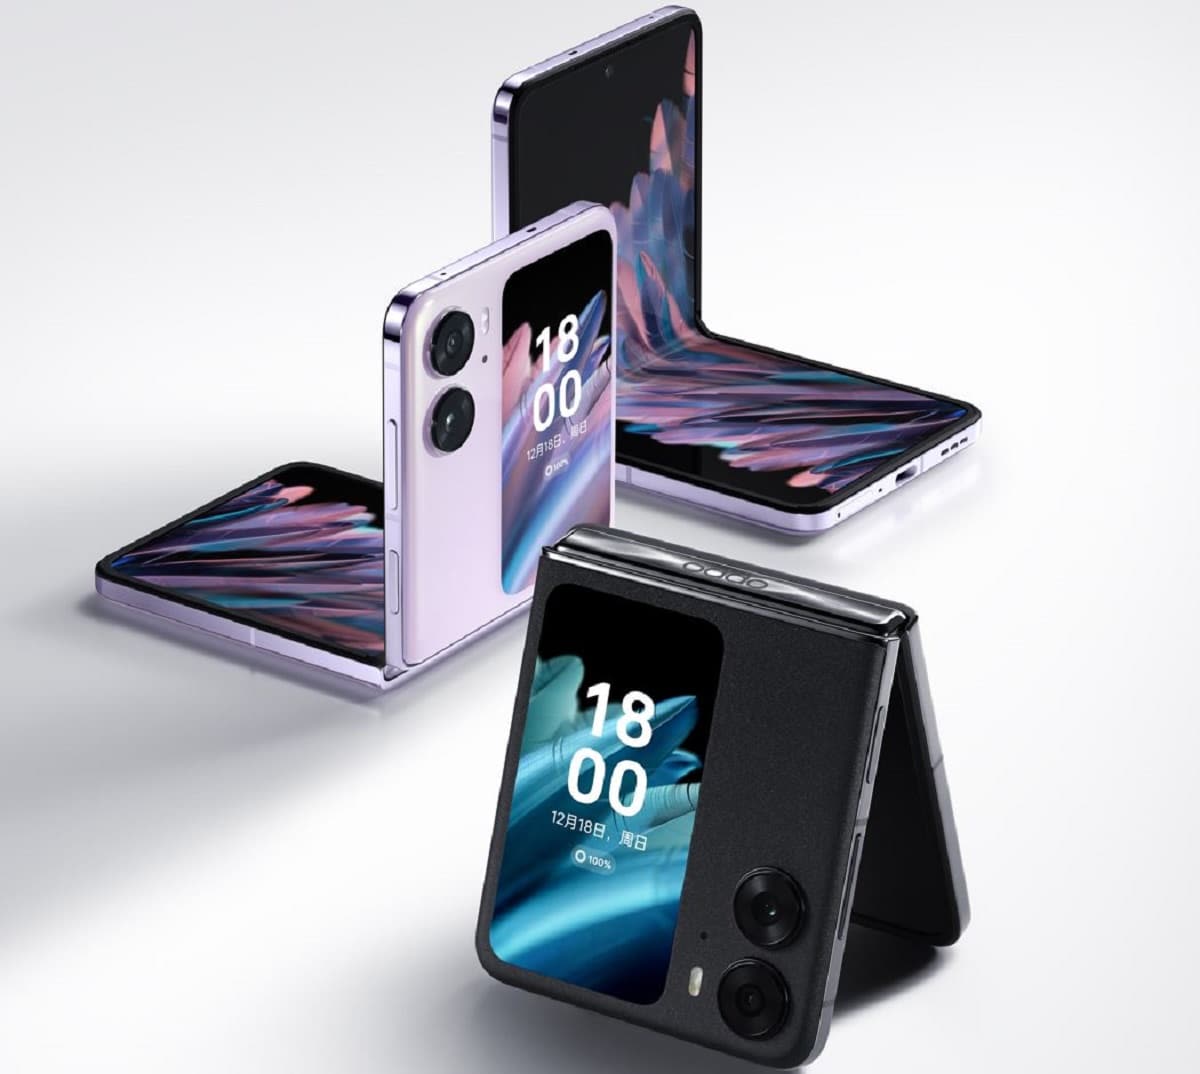 Le nouveau smartphone OPPO Flin N2 Flip à écran pliable sortira au premier trimestre 2023 et il risque de faire un carton